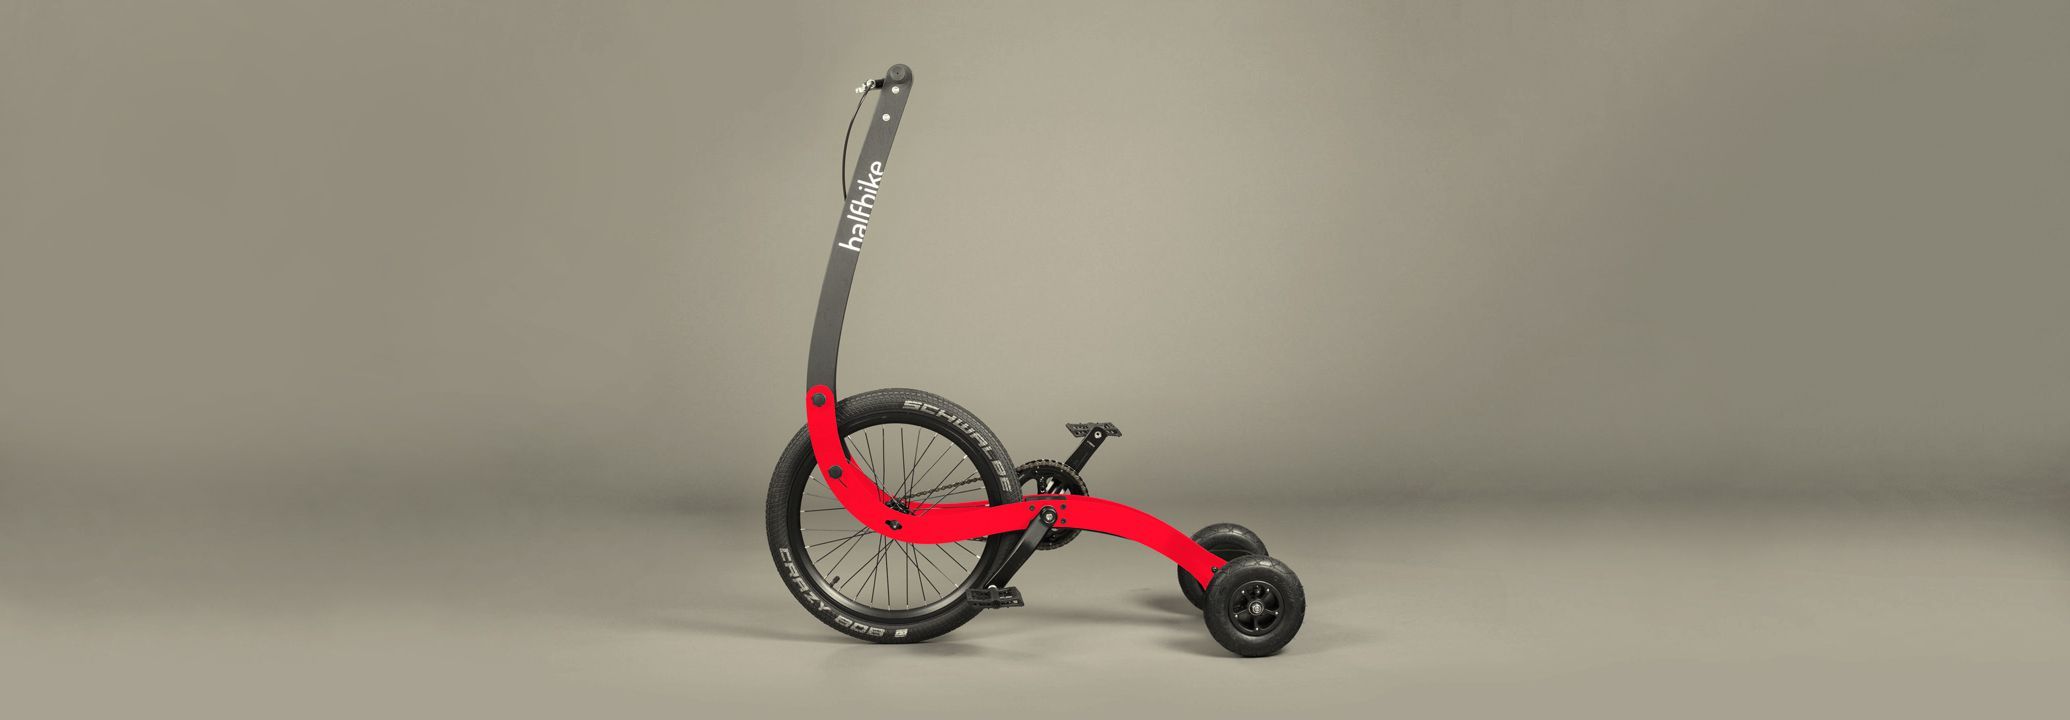 elliptical go bike